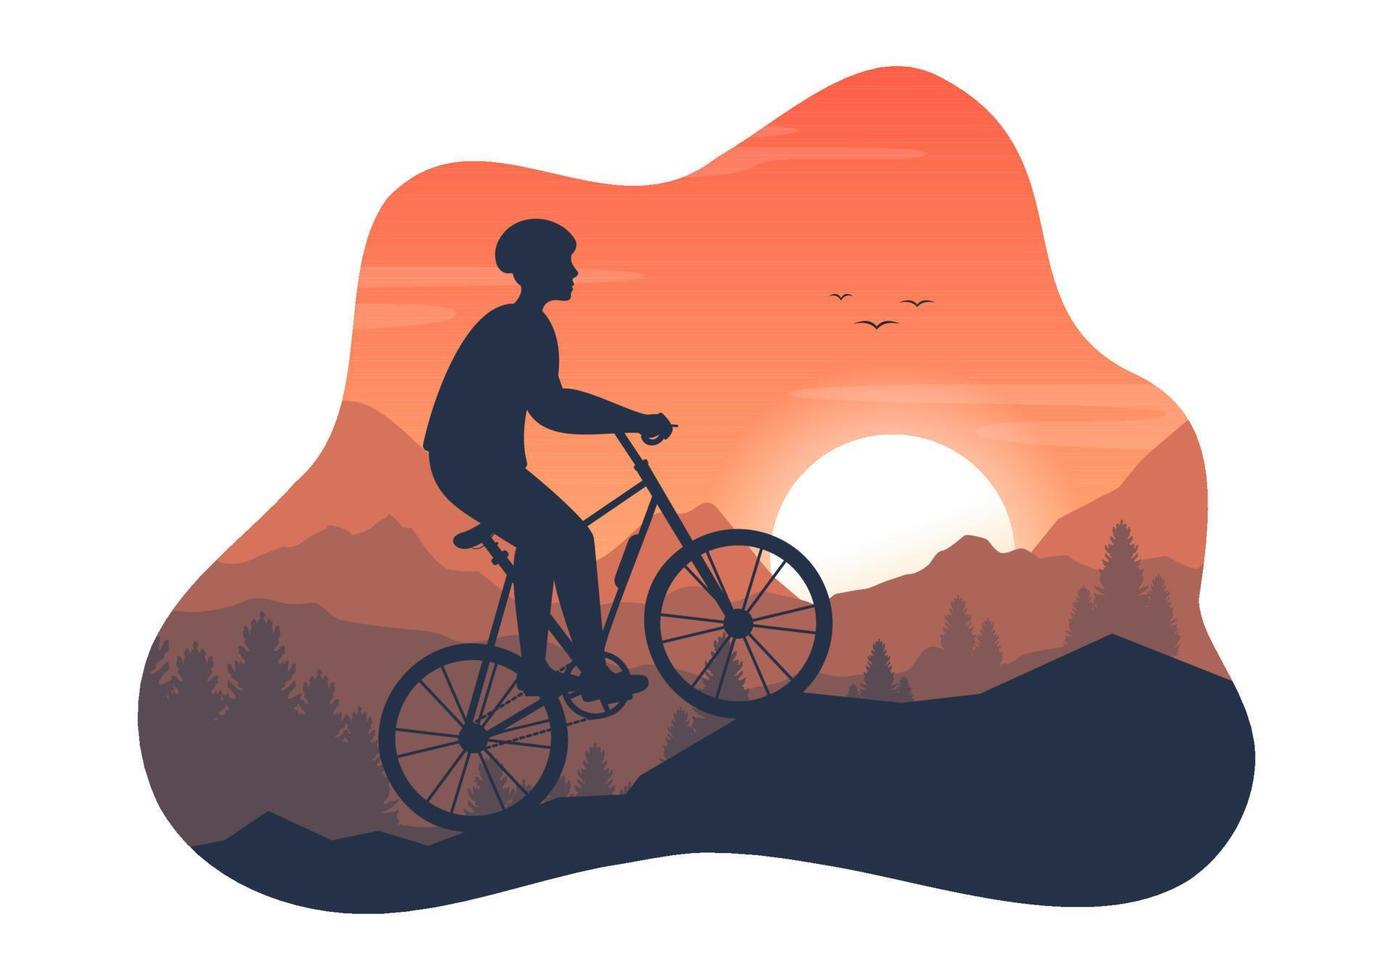 Mountainbike-Illustration mit Radfahren die Berge hinunter für Sport, Freizeit und gesunden Lebensstil in handgezeichneten Vorlagen mit flacher Cartoon-Silhouette vektor